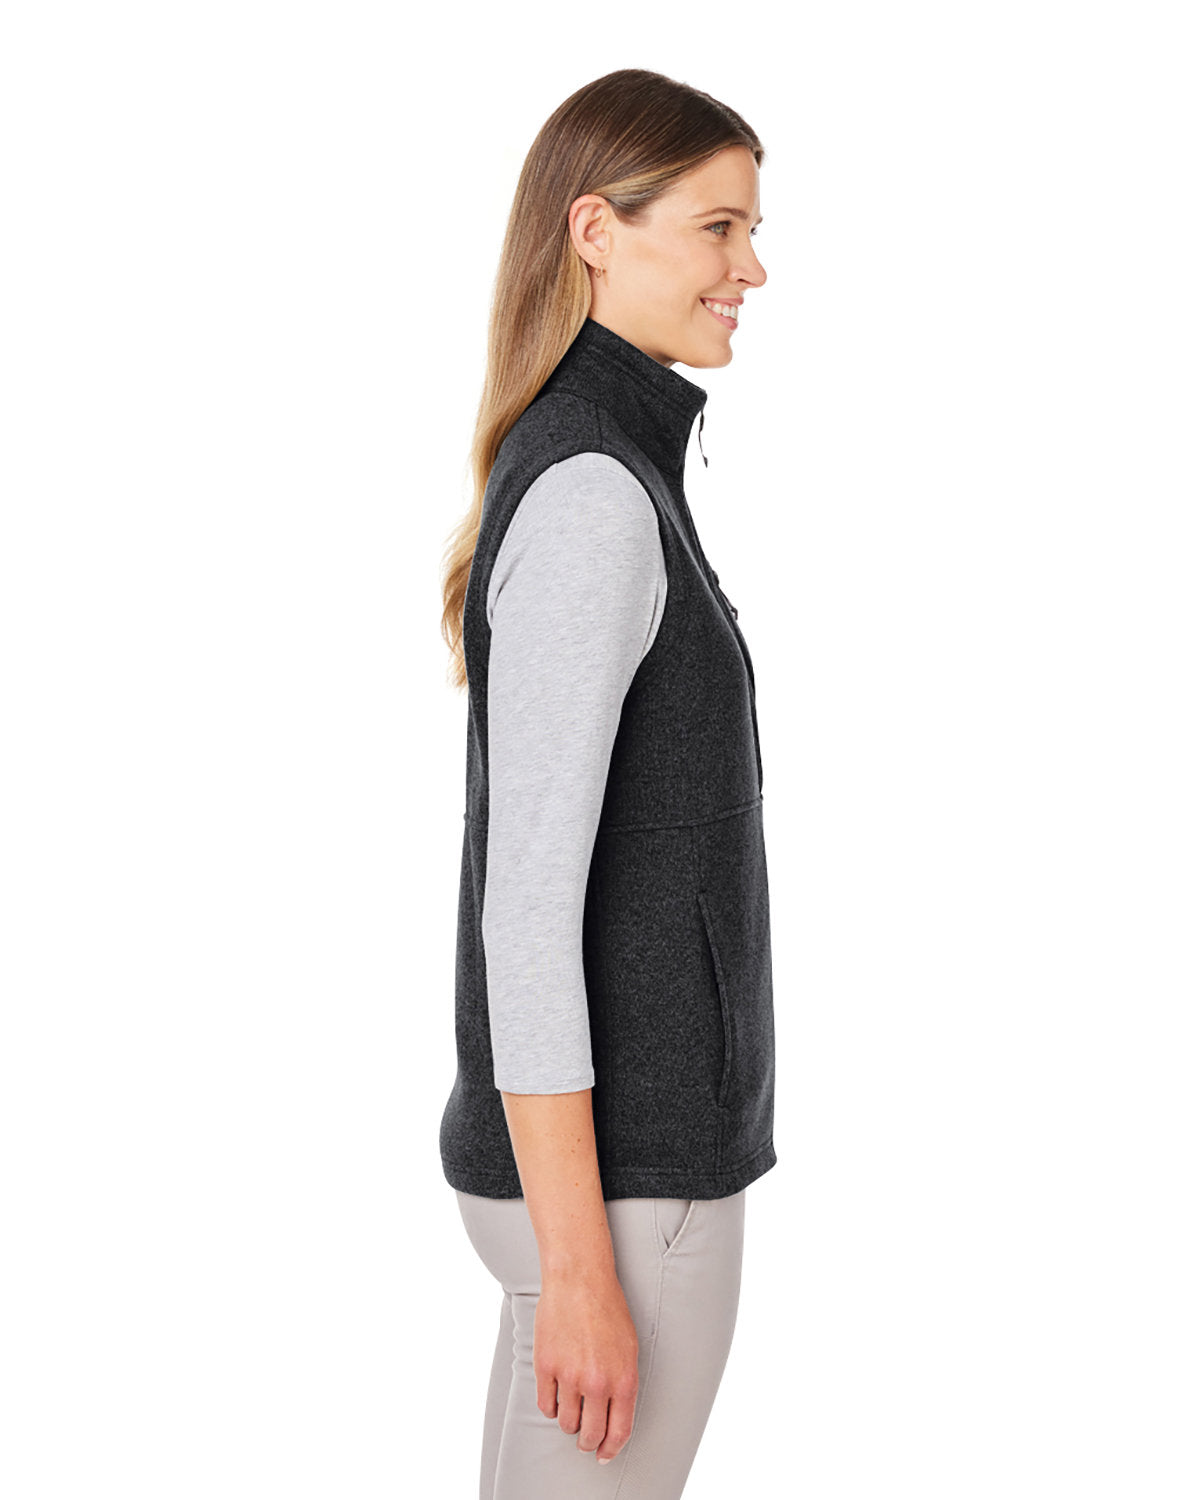 Marmot Ladies Dropline Sweater Fleece Vests, Black